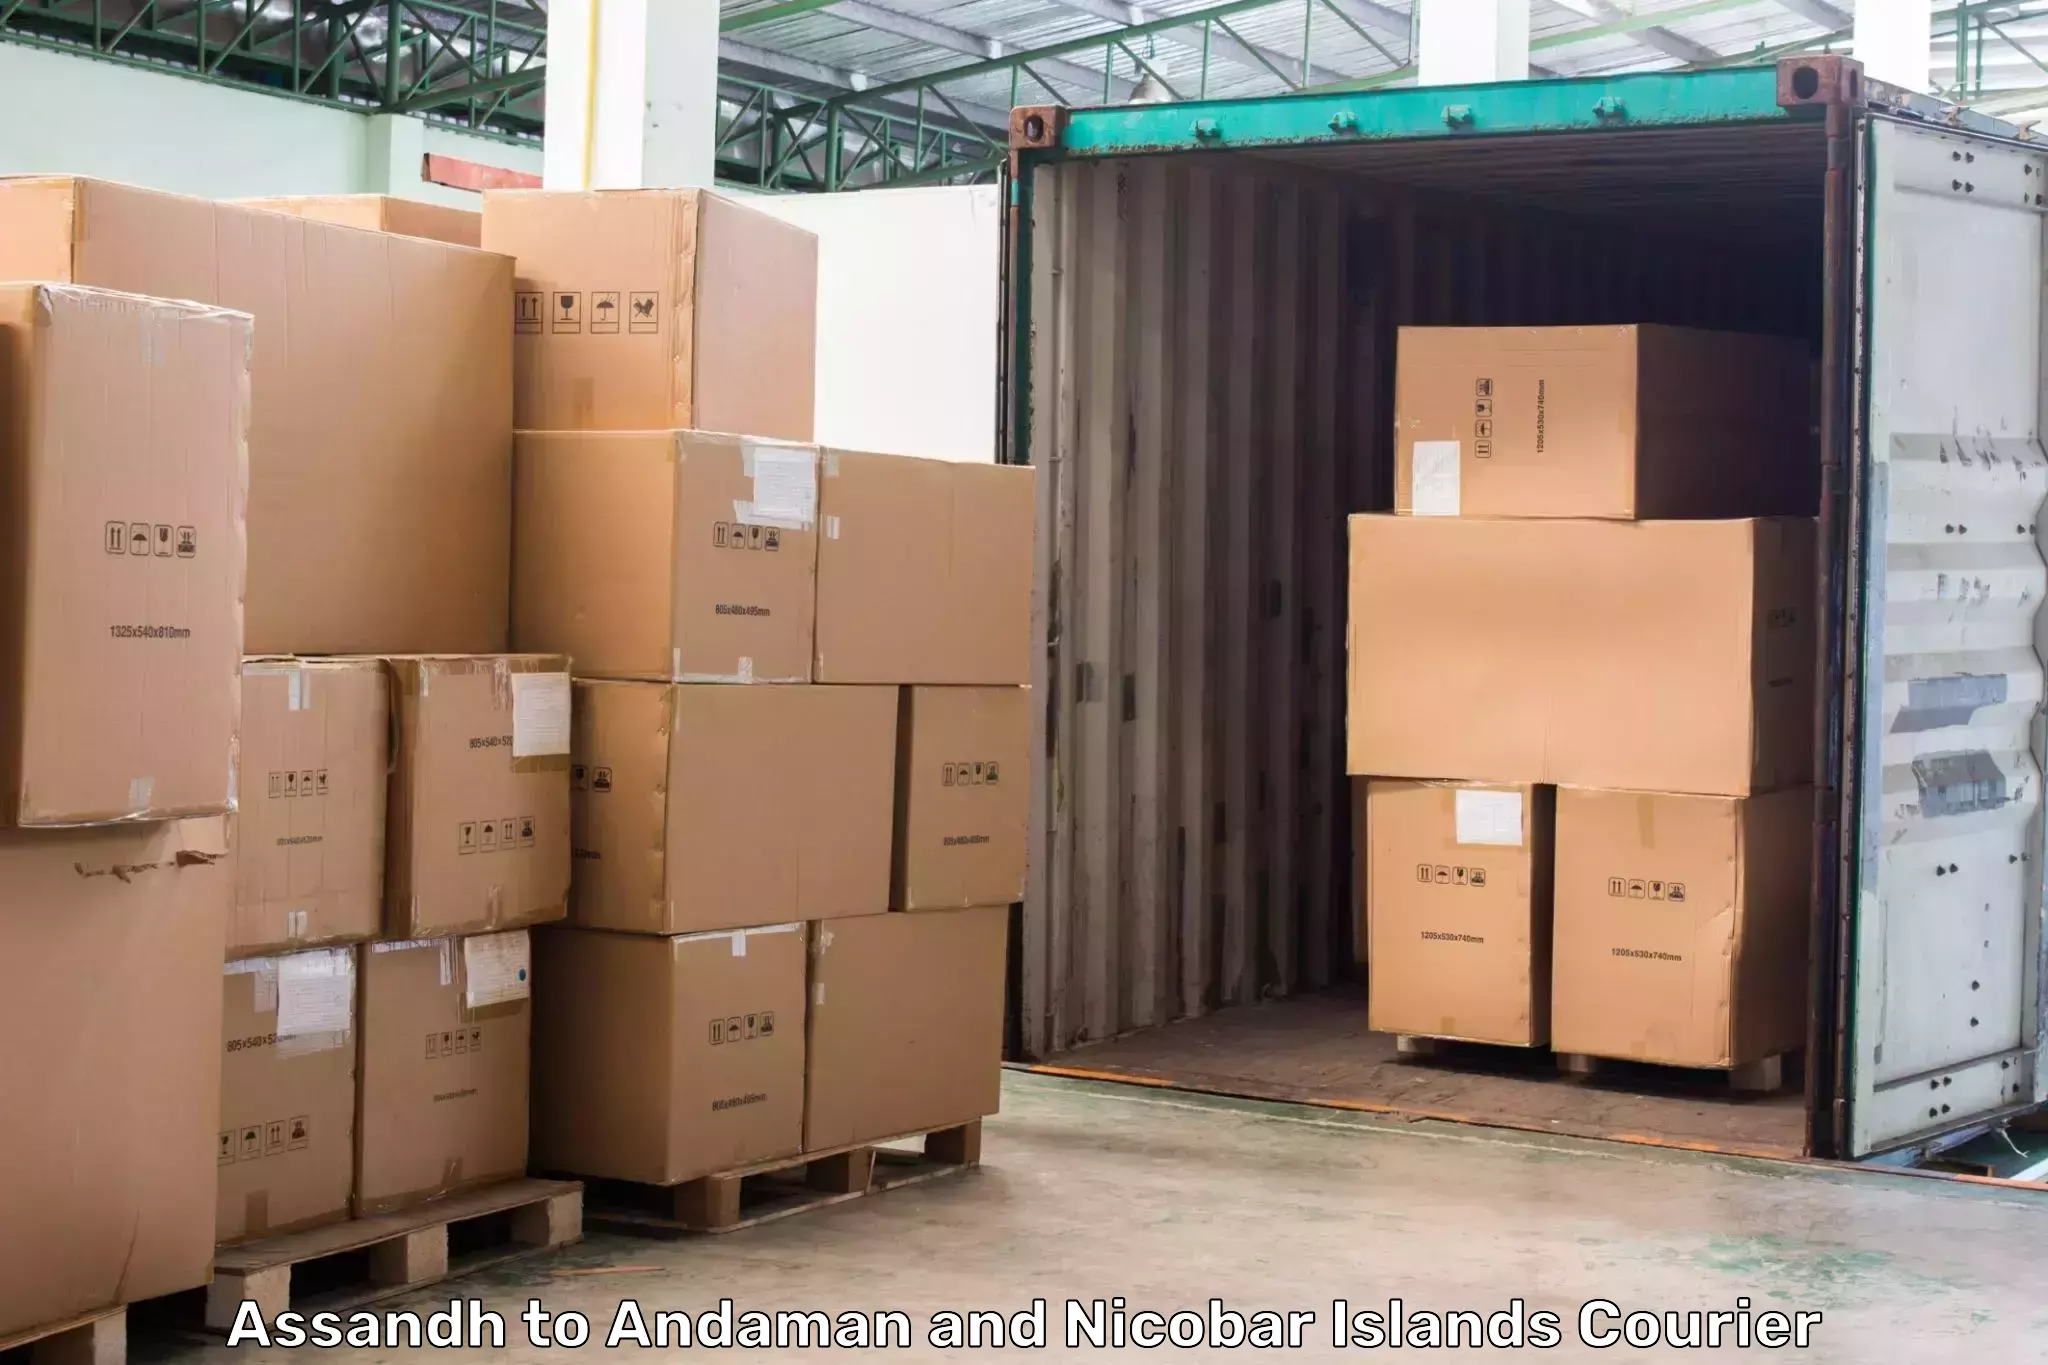 High-performance logistics Assandh to Andaman and Nicobar Islands